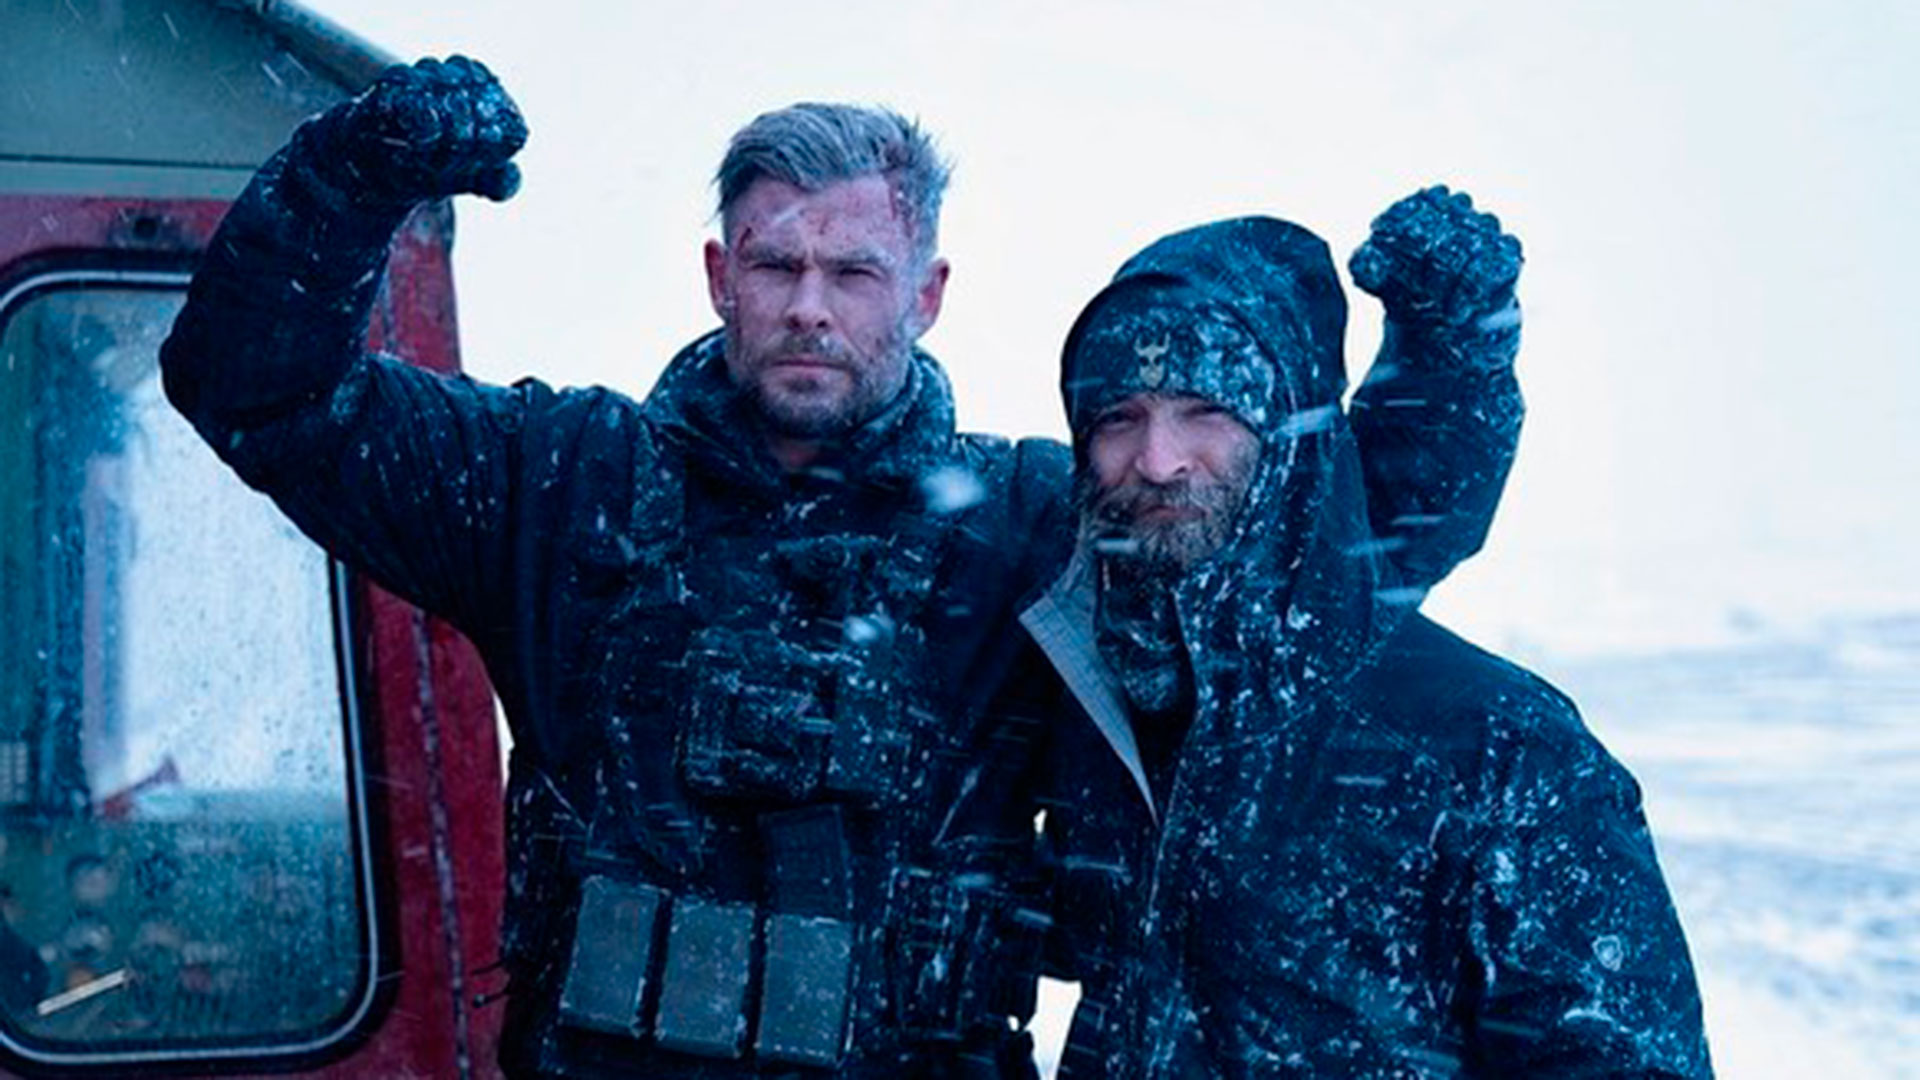 Con un frío extremo, Hemsworth y Sam Hargrave se tomaron esta foto en plena filmación. (@samhargrave)